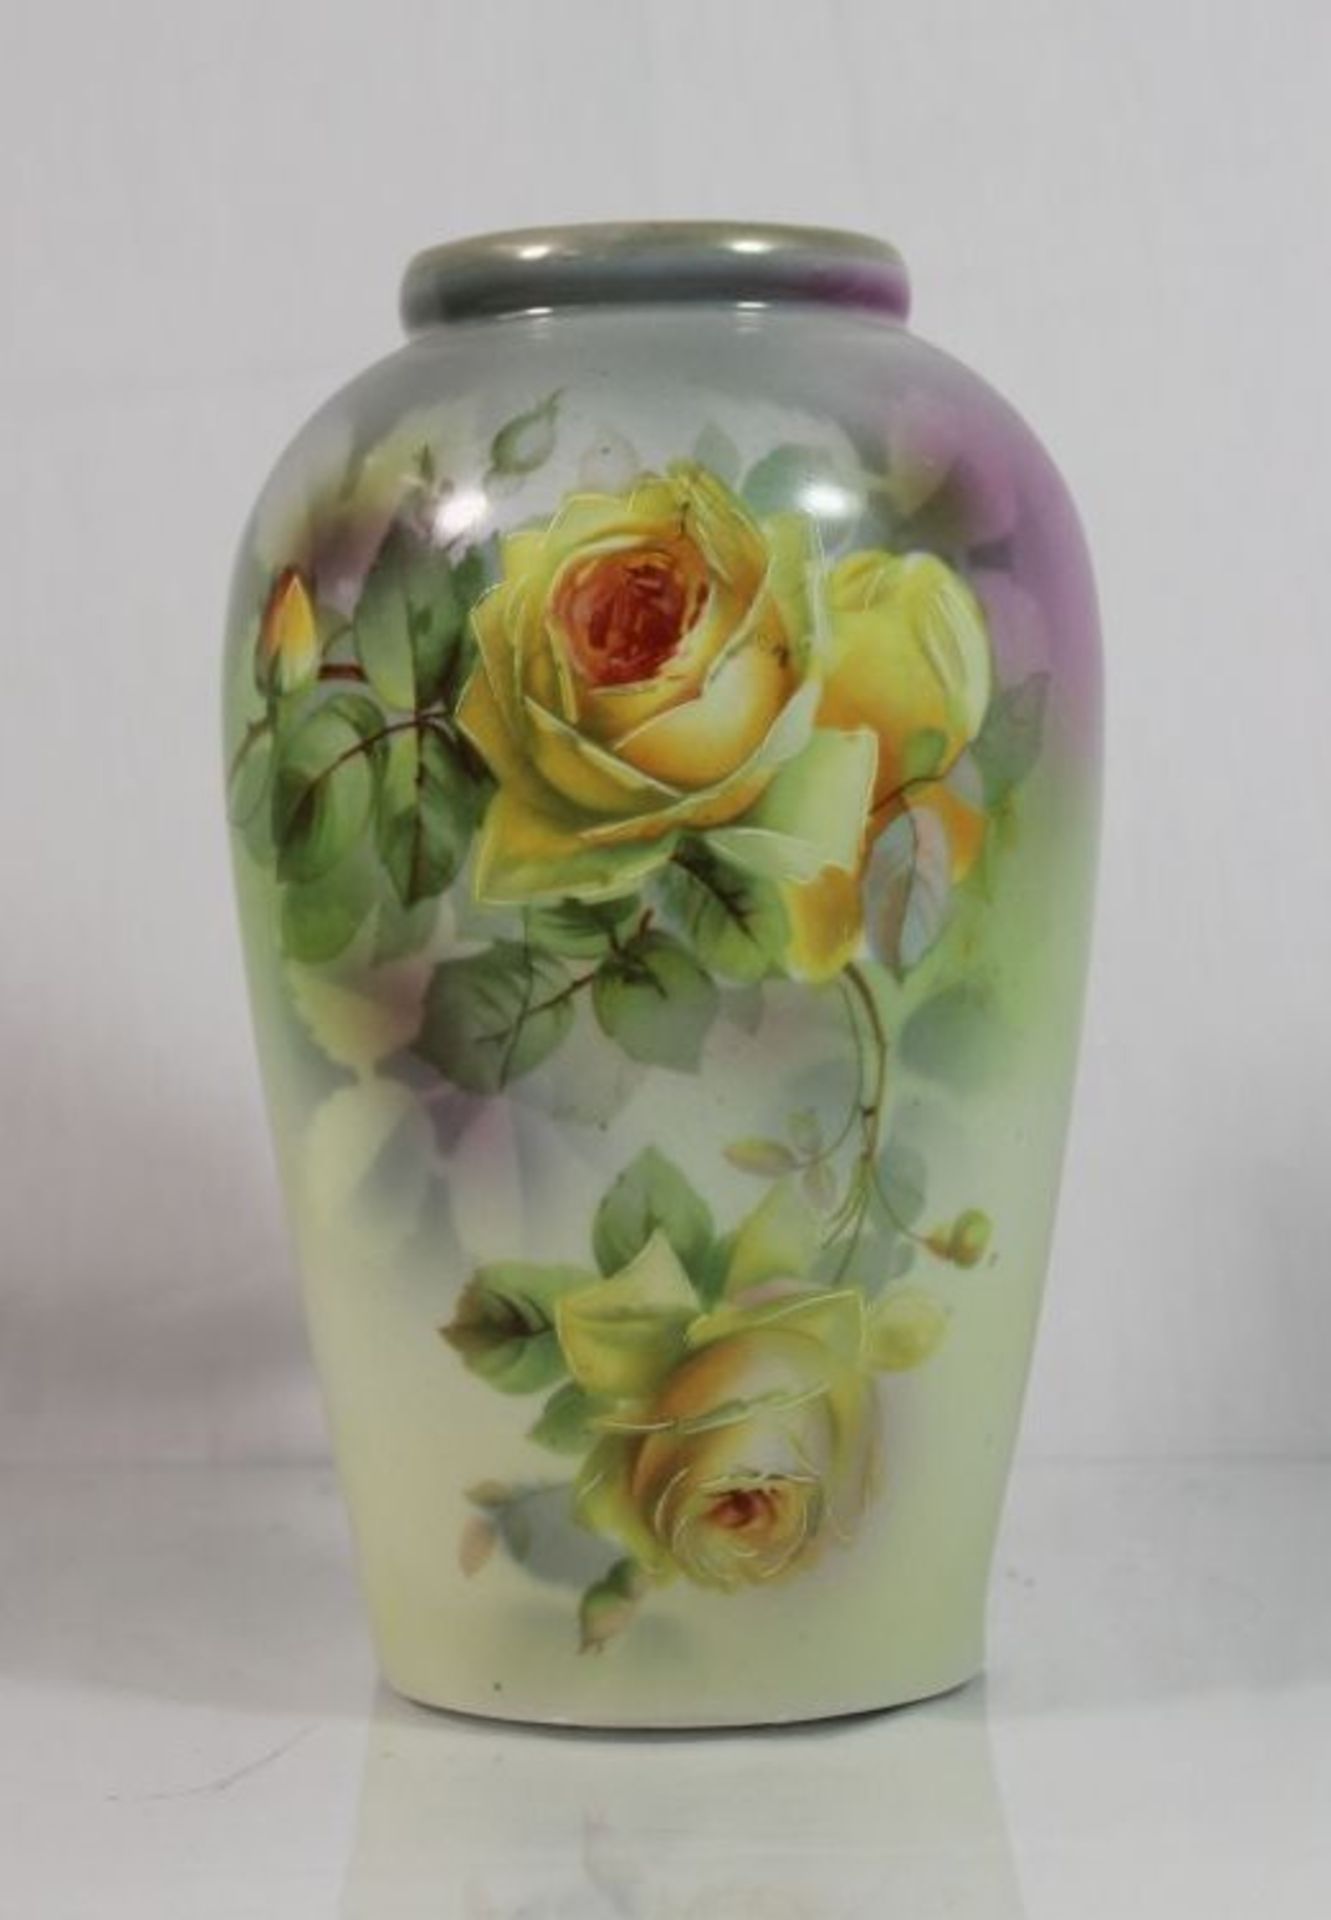 Vase um 1920, Rosenbemalung, ungemarkt, nur Nr. 2152, H-21,5cm.- - -22.61 % buyer's premium on the